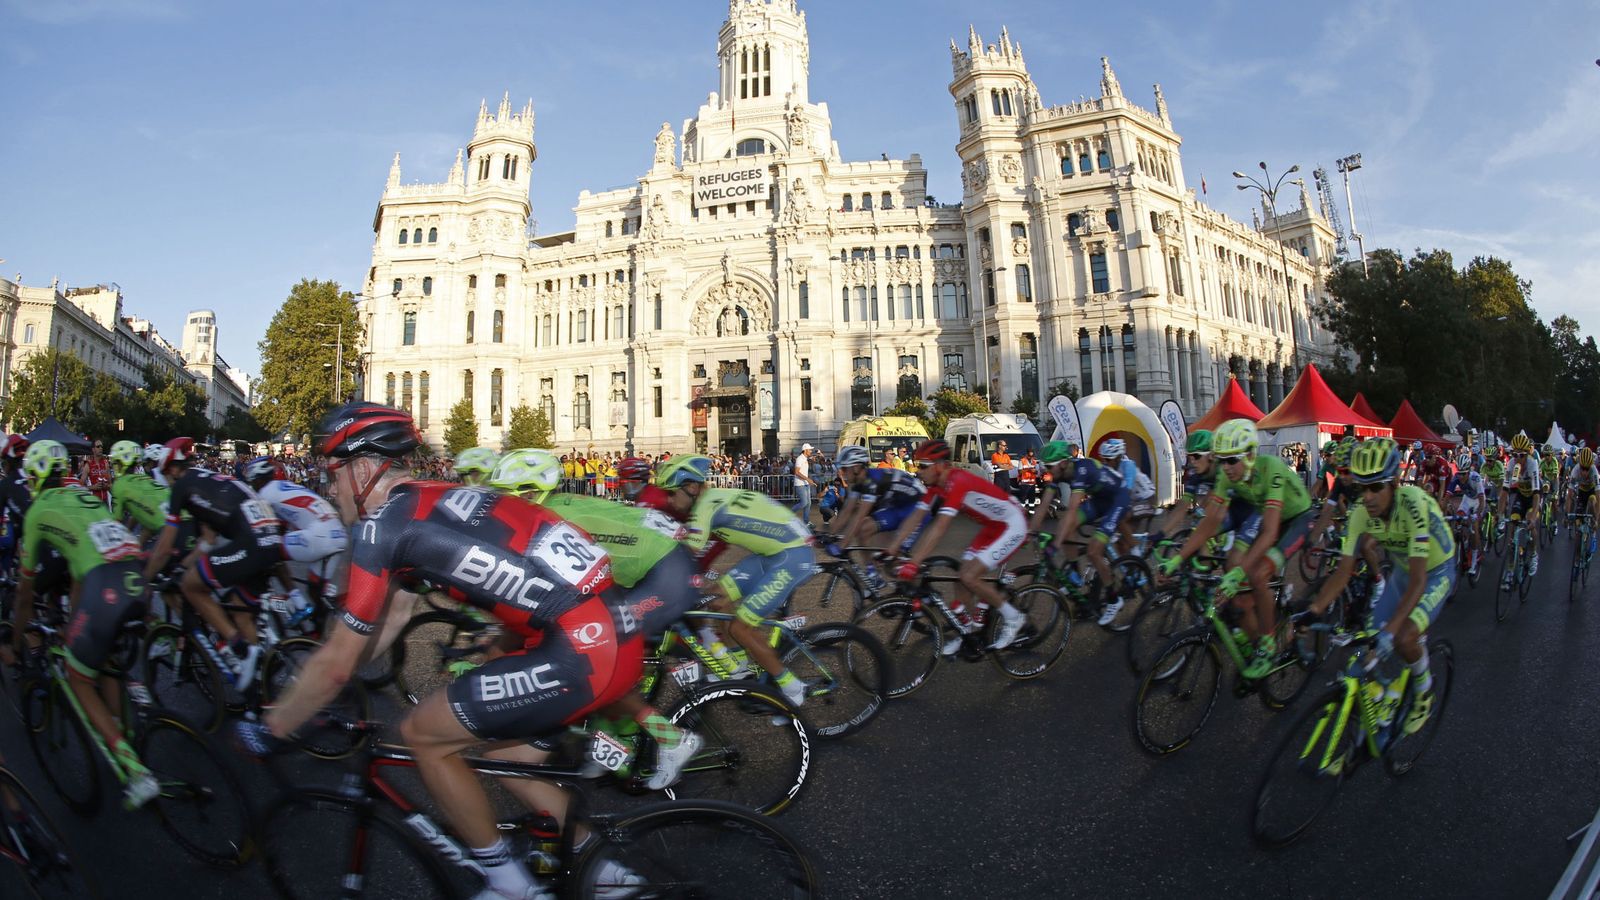 Foto: El pelotón ciclista durante la pasada Vuelta a España. (Efe)